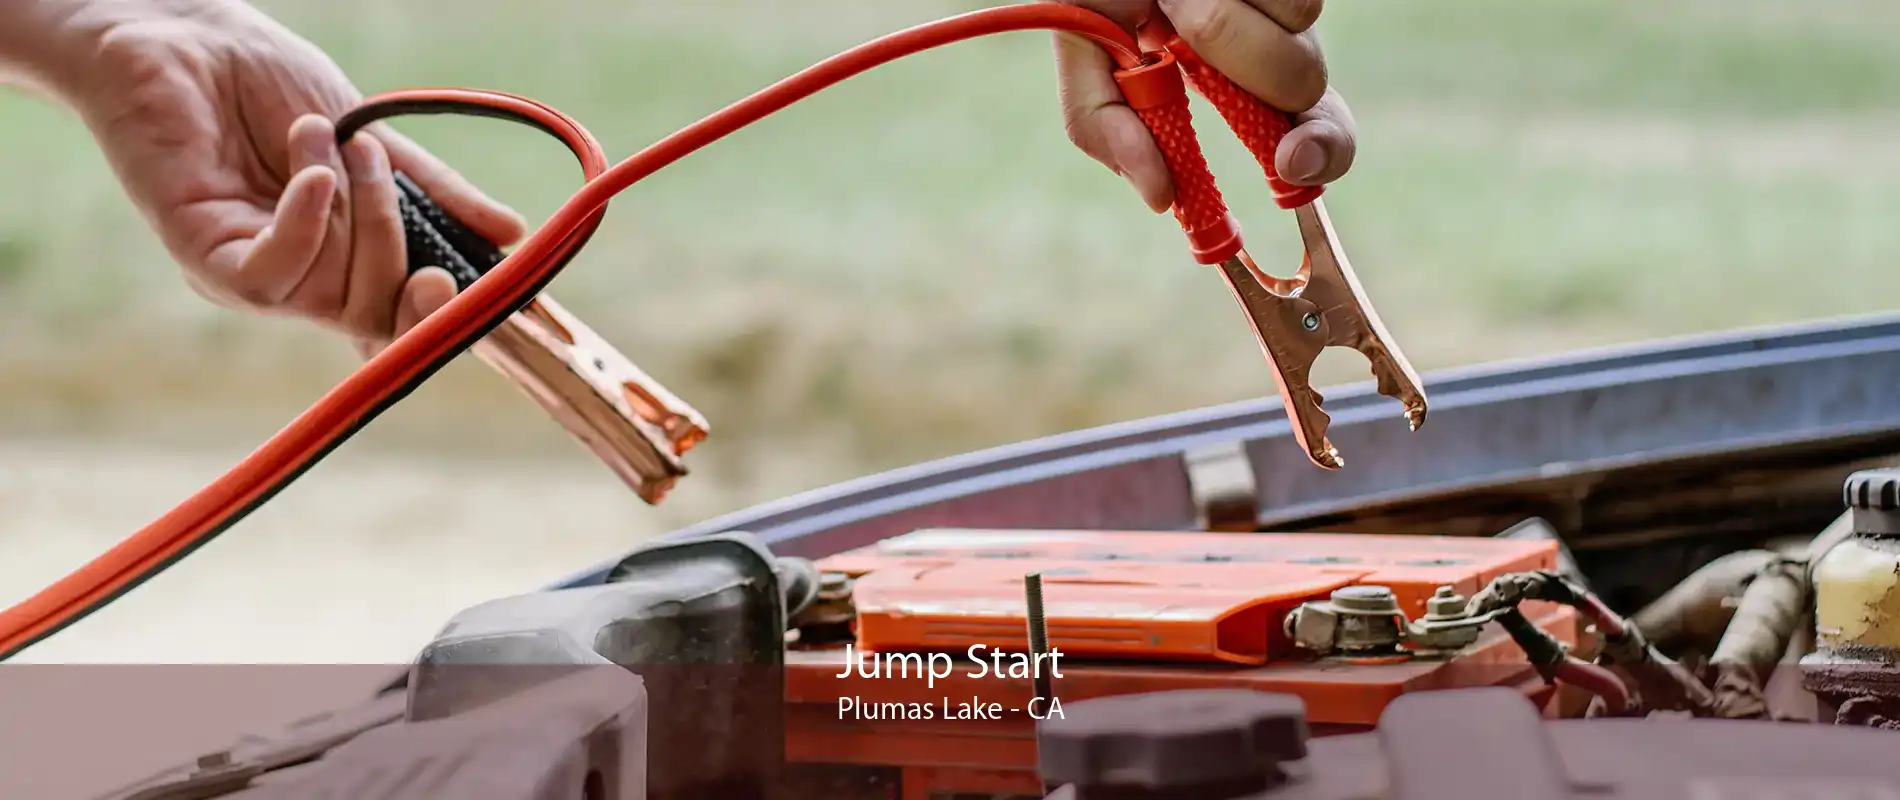 Jump Start Plumas Lake - CA